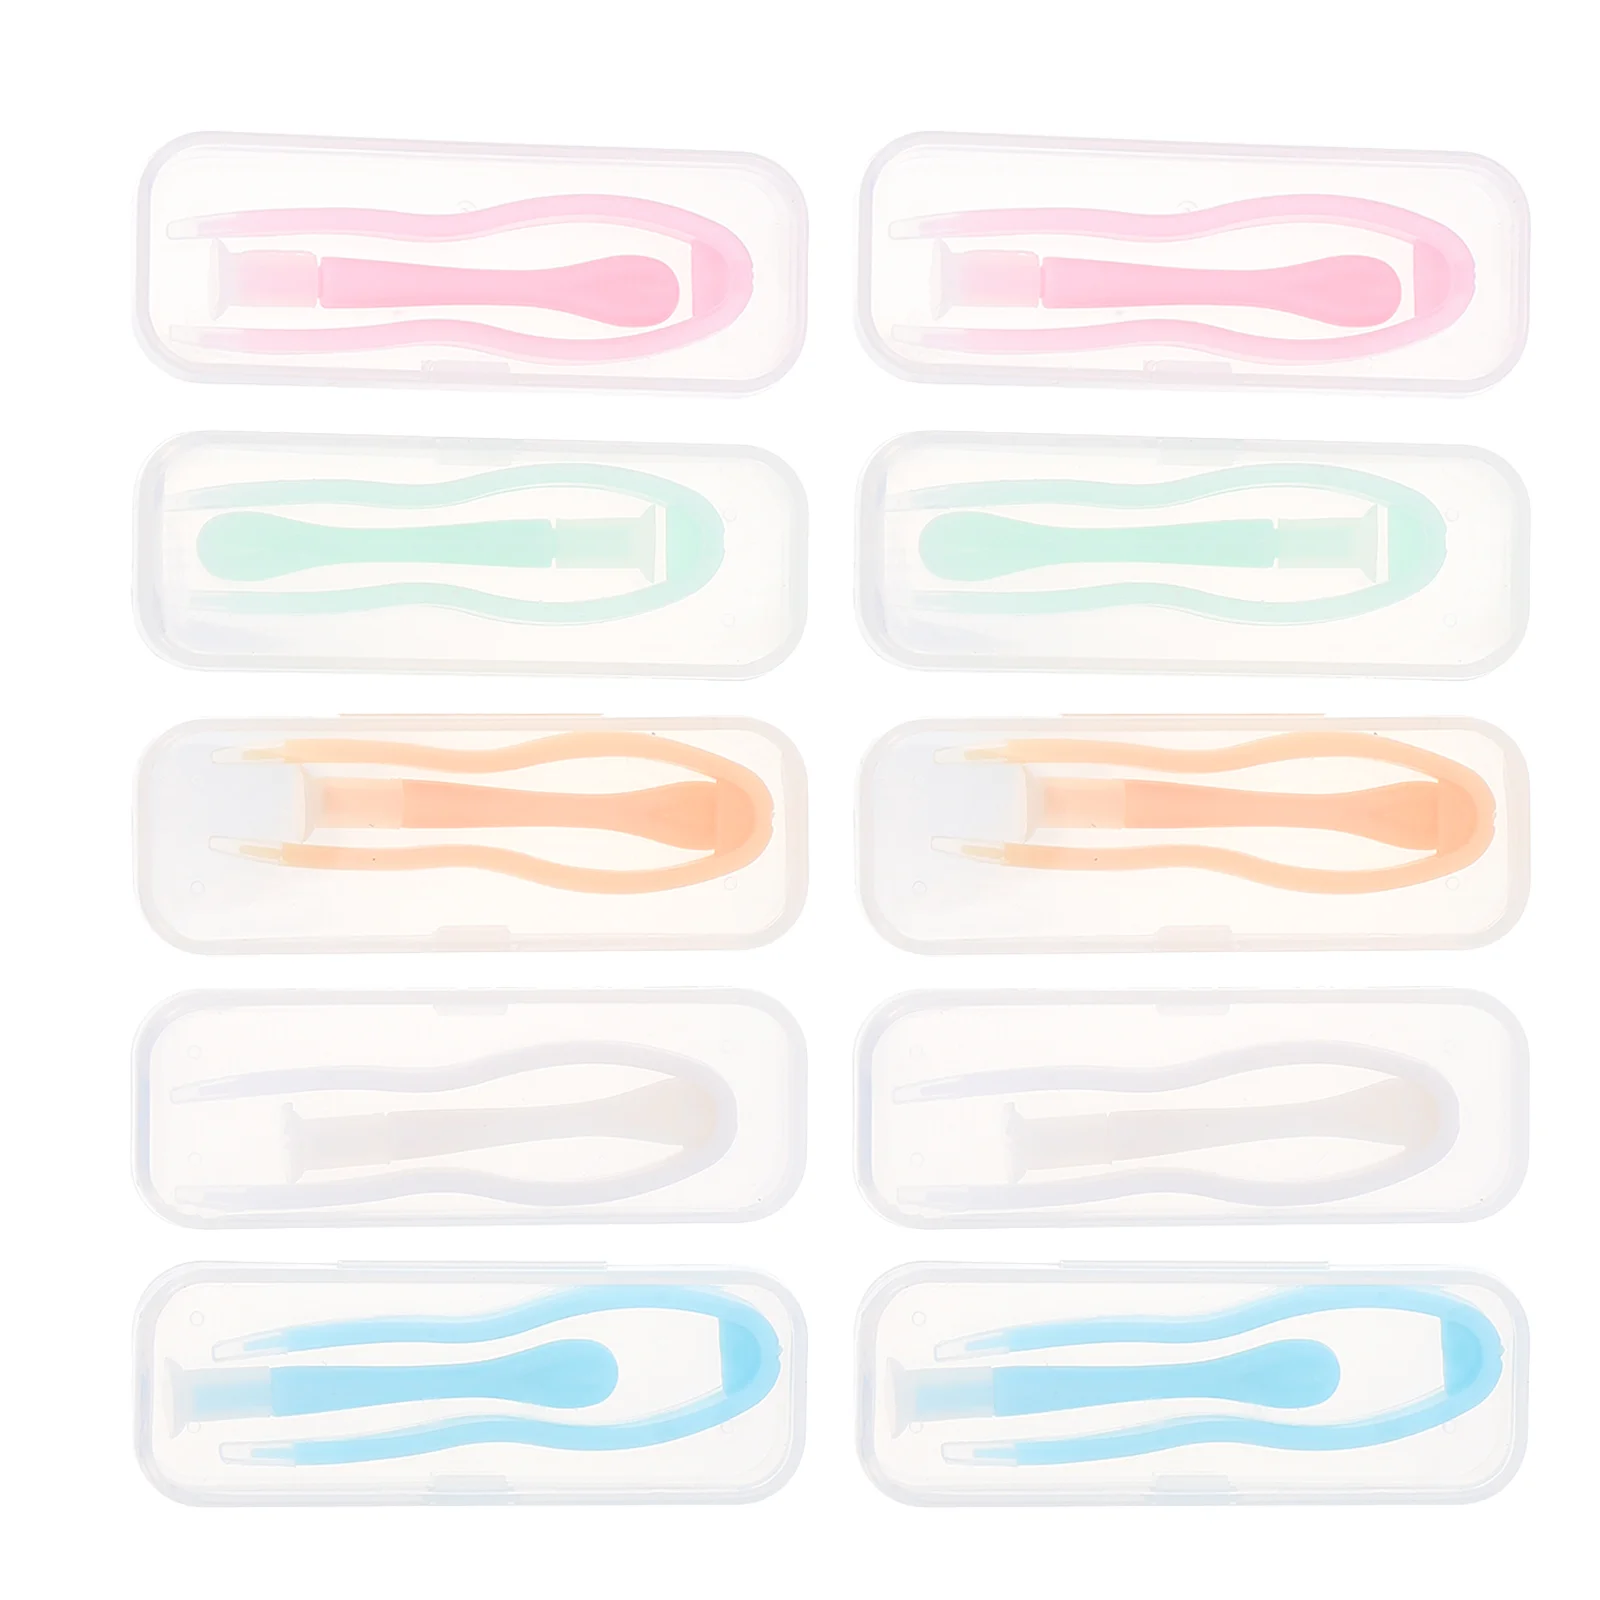 10 Комплектов присоски для вставки контактных линз Практичный Компактный Пинцет для контактных линз